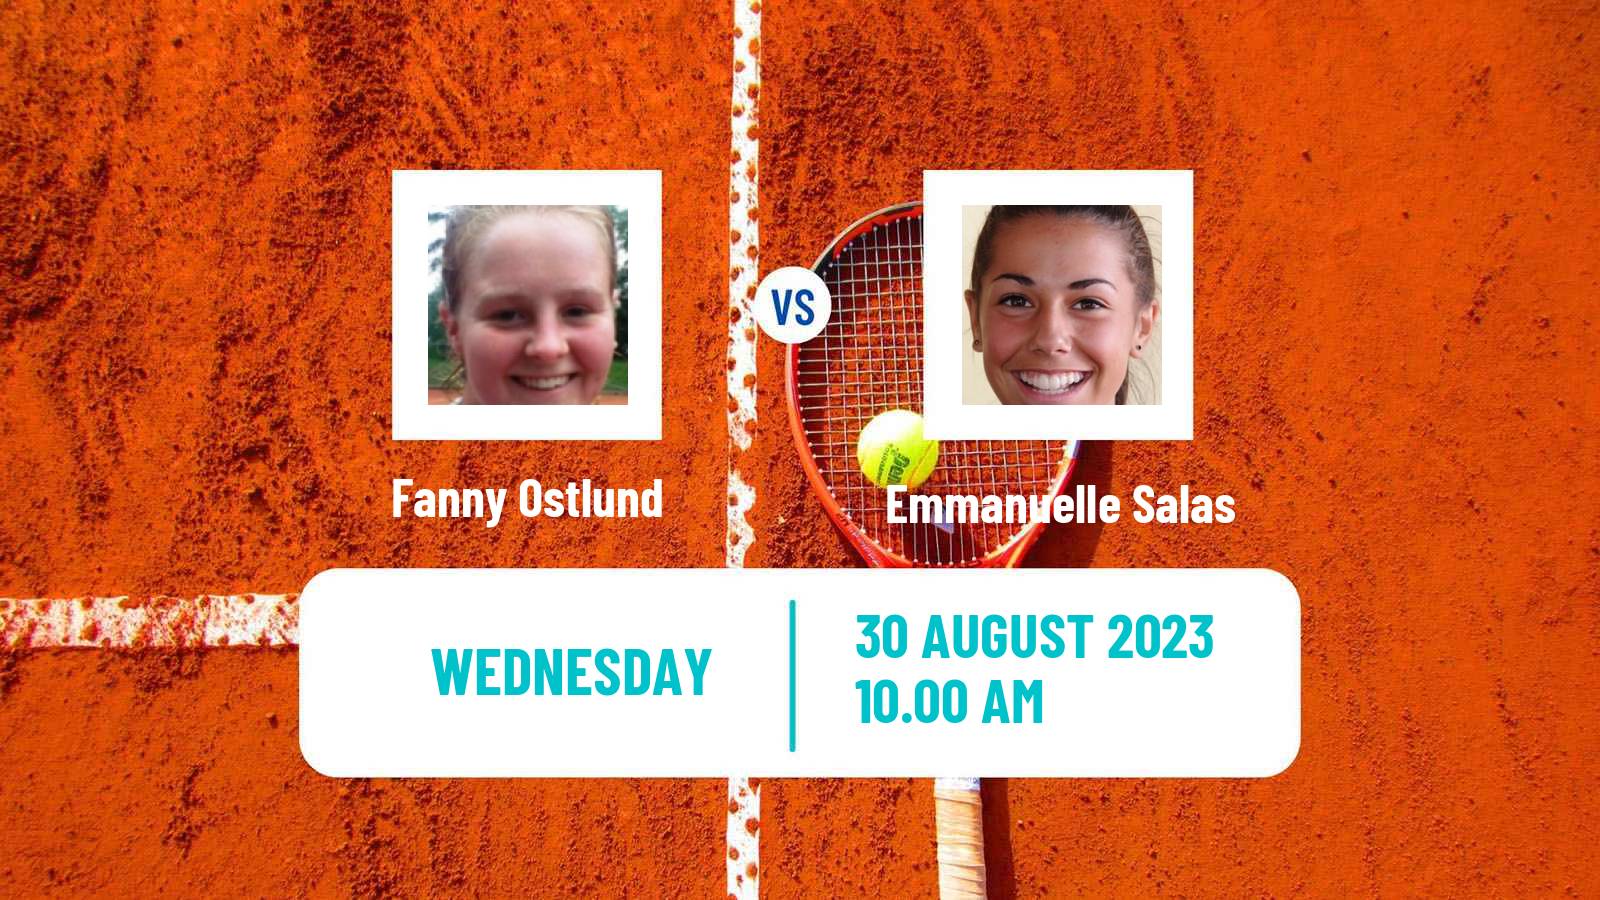 Tennis ITF W60 Collonge Bellerive Women Fanny Ostlund - Emmanuelle Salas